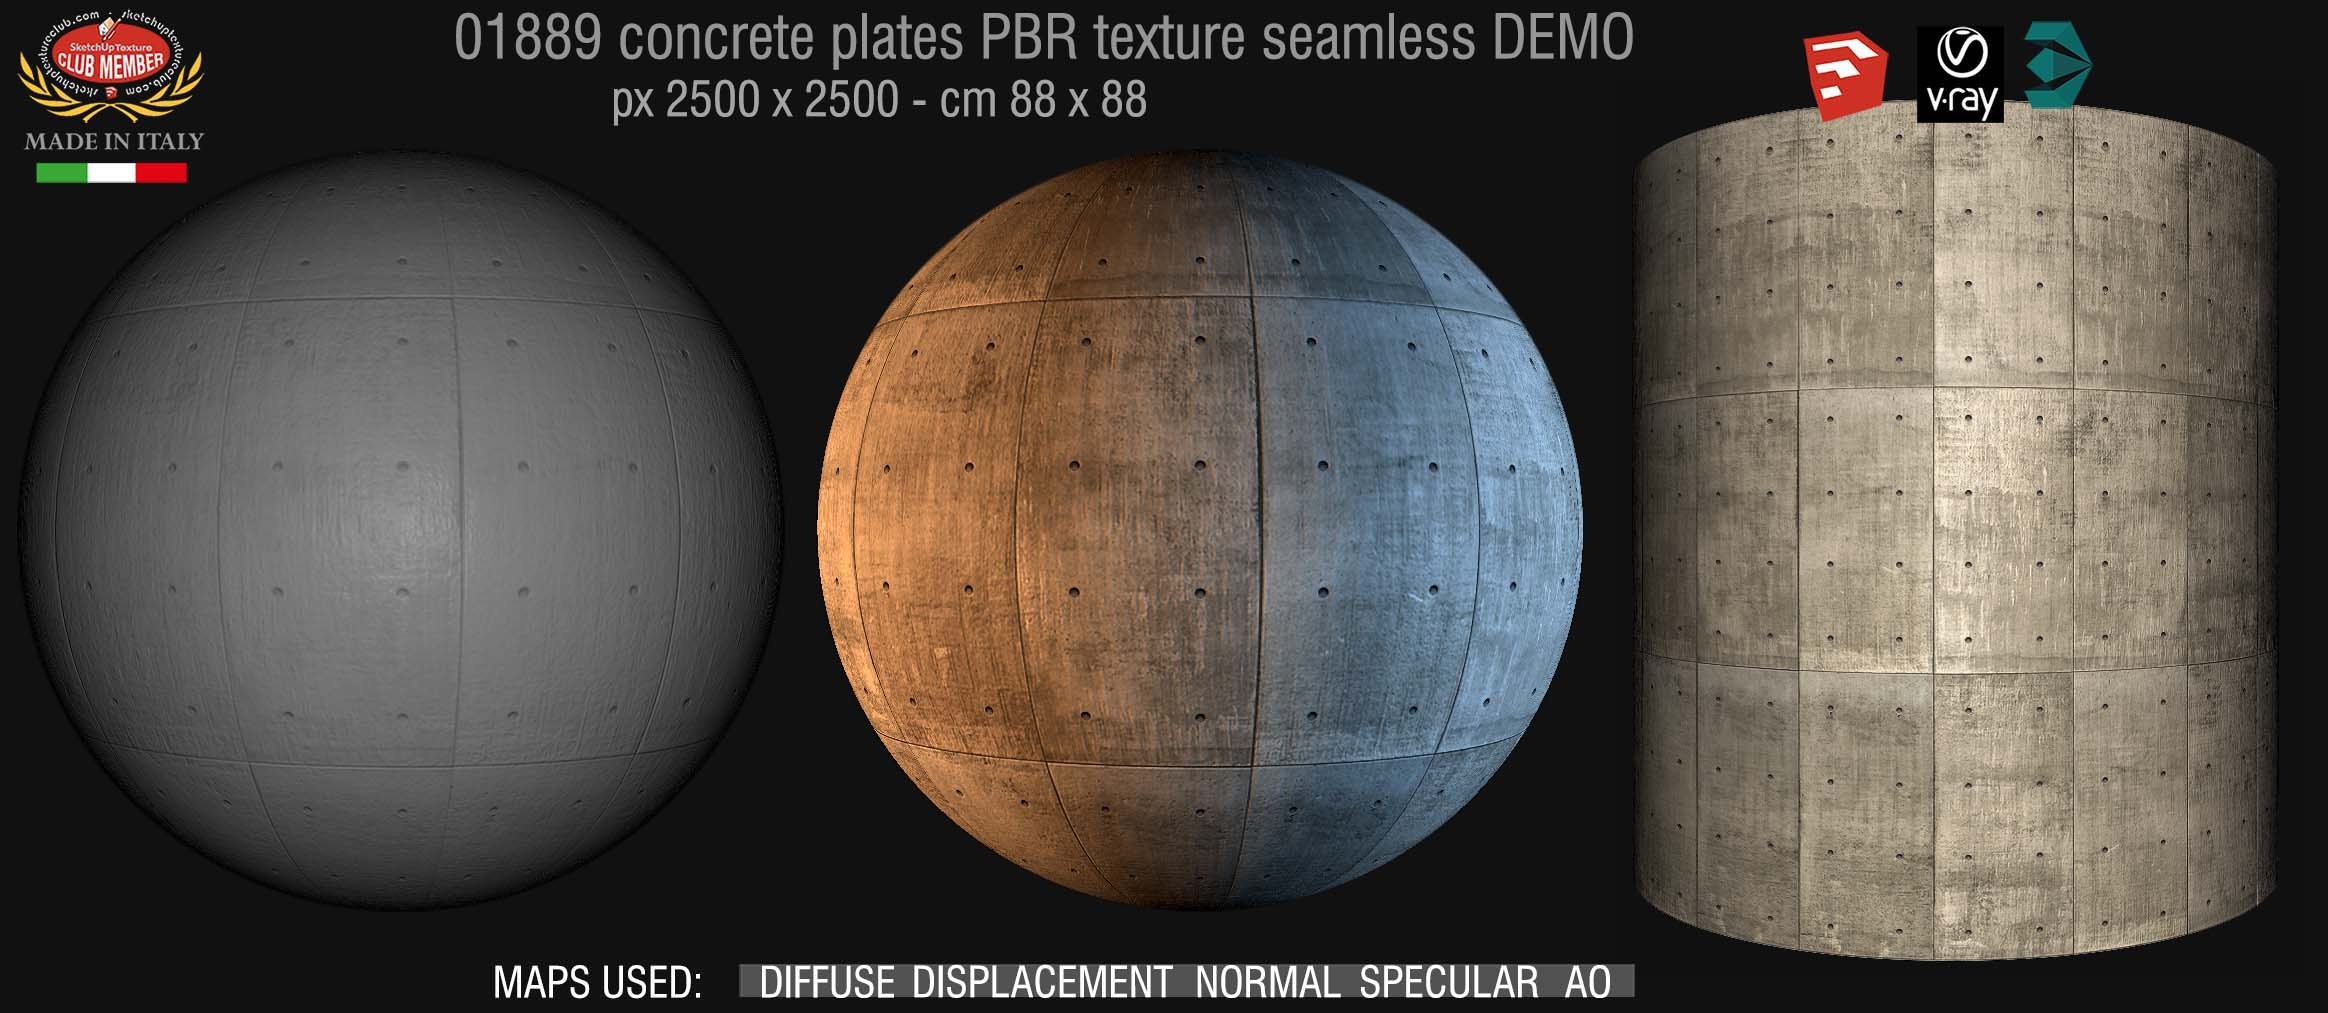 01889 tadao ando concrete plates PBR texture seamless DEMO